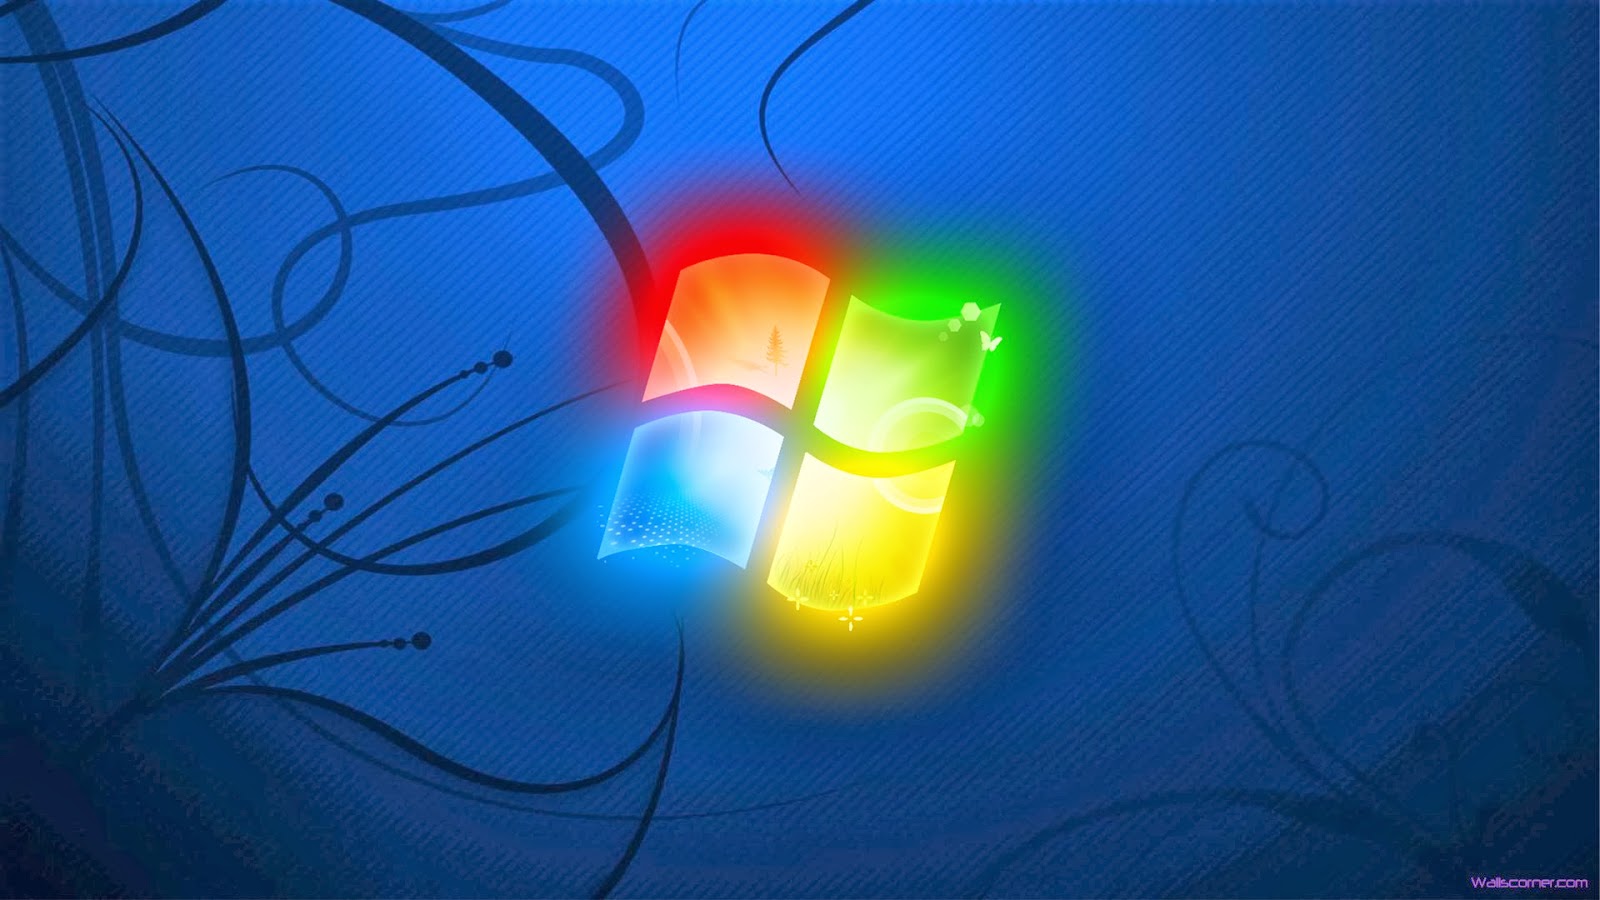 Windows 7 Hd Wallpapers 1080p - WallpaperSafari